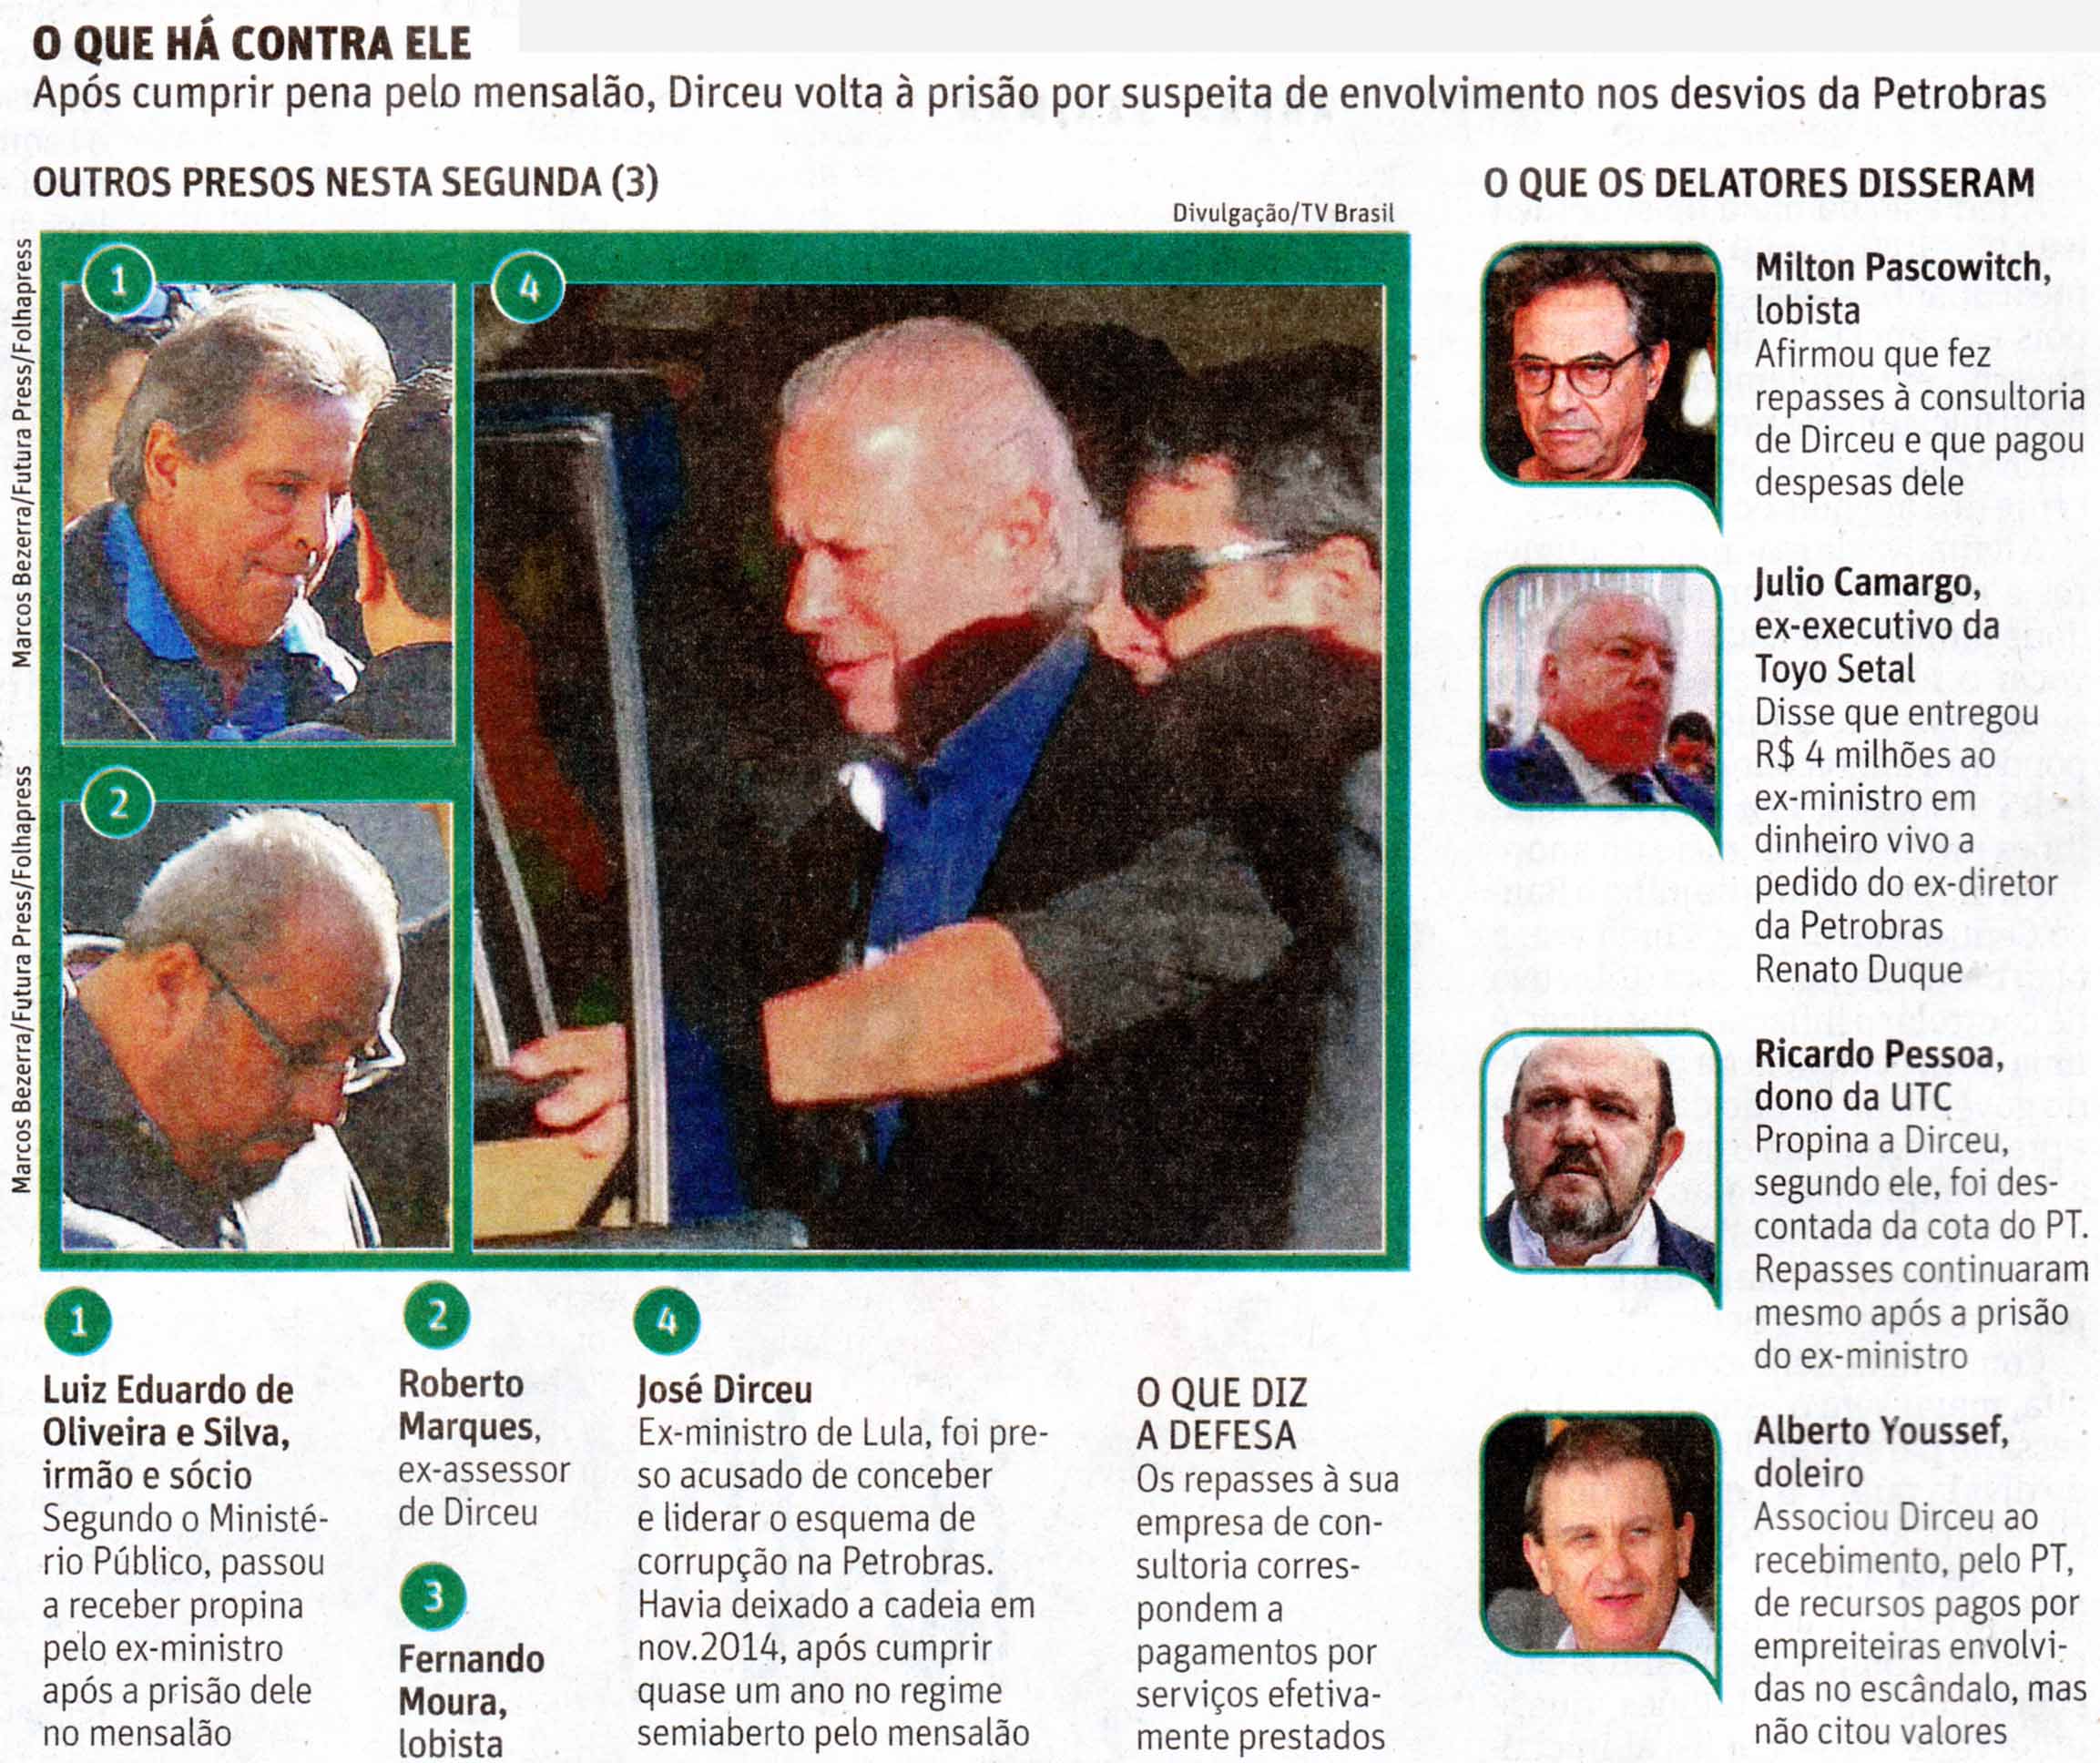 Folha de So Paulo - 04/08/15 - DIRCEU: Repasses  Consultoria